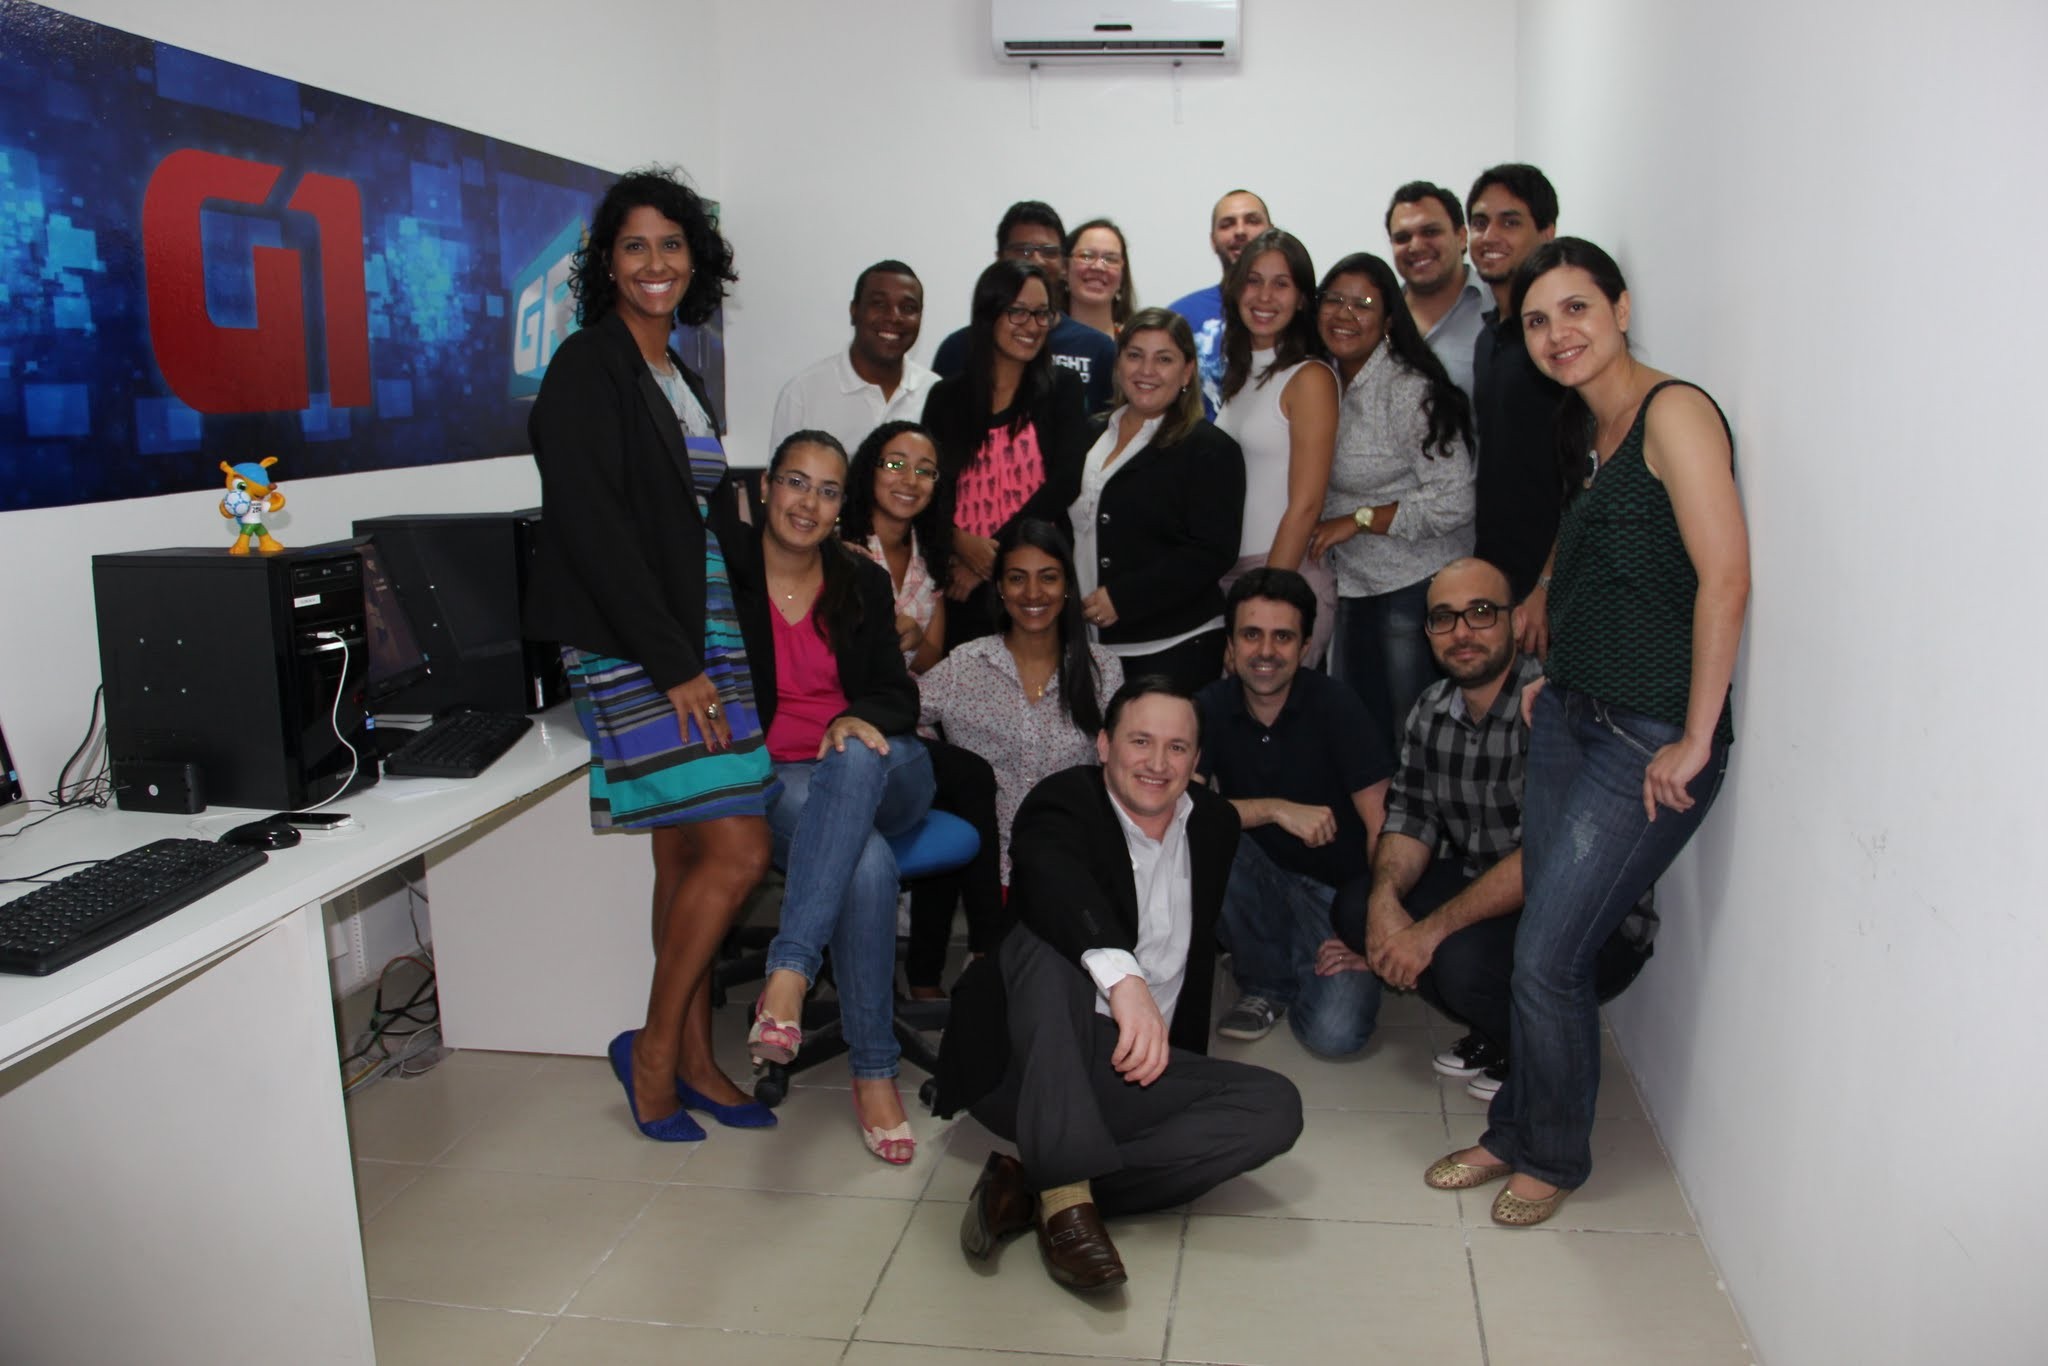 Equipes G1, GloboEsporte.com e site da TV Grande Rio comemoram lançamento dos portais (Foto: Paulo Ricardo Sobral)